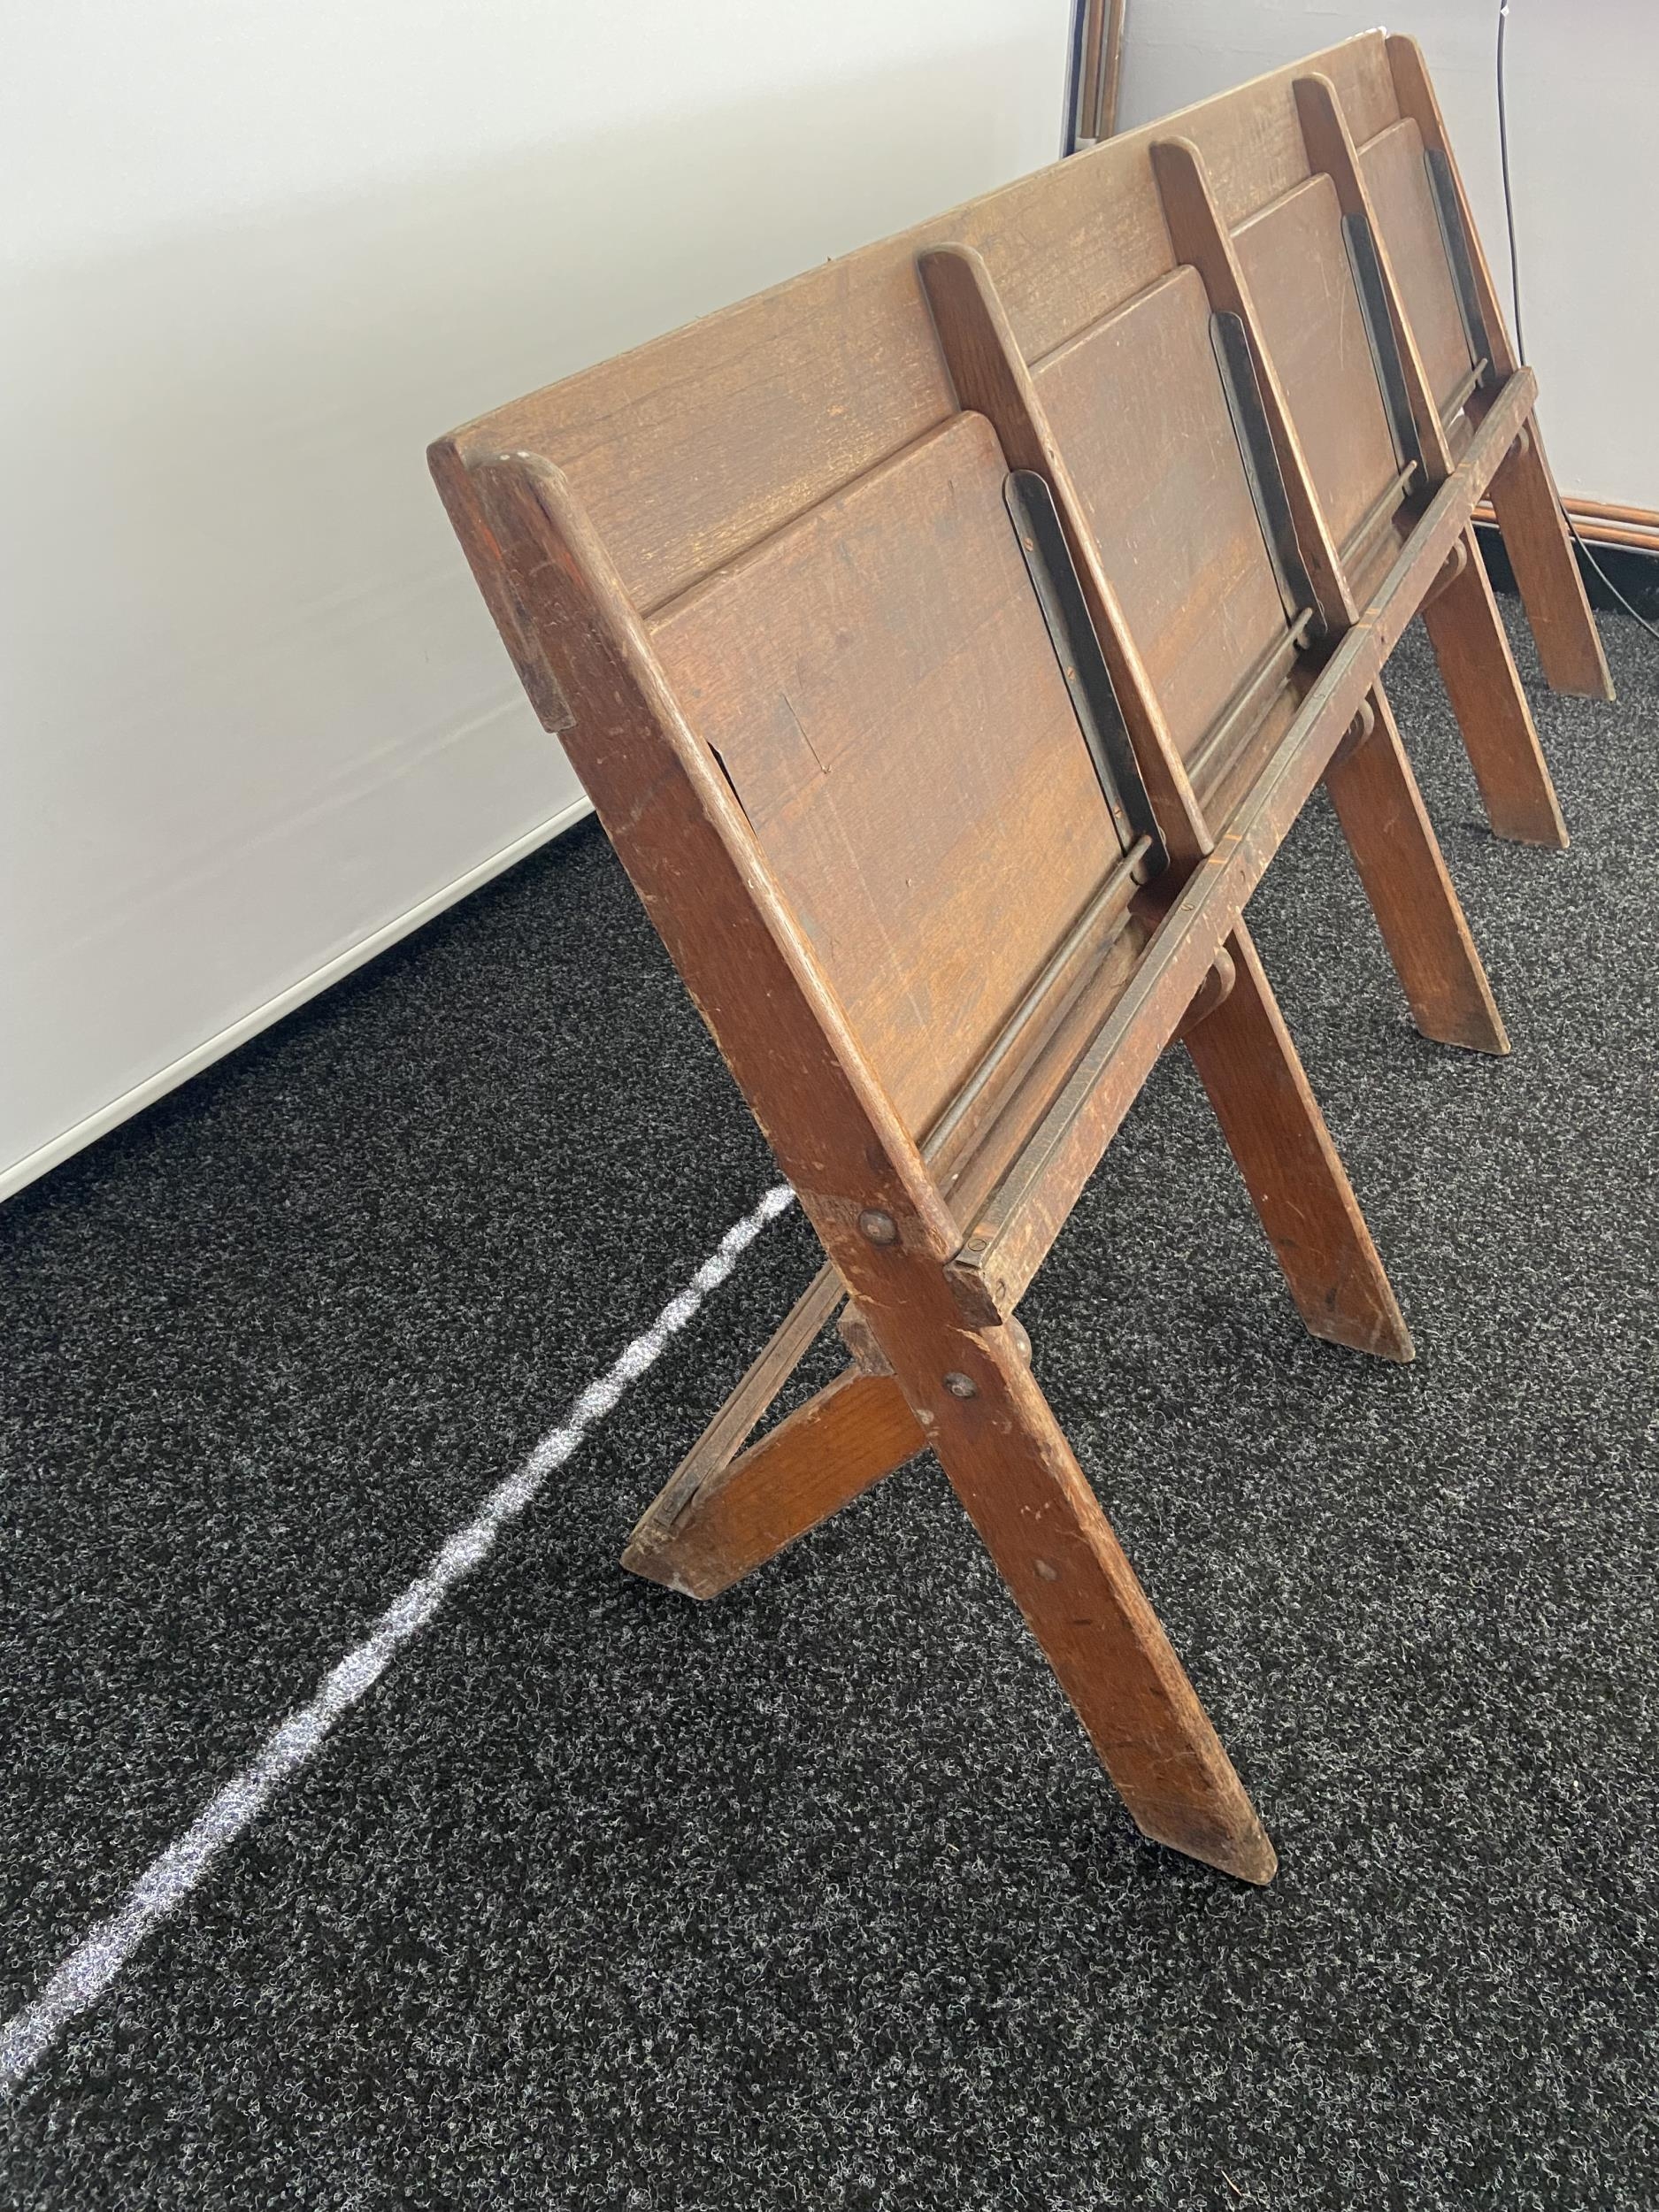 James D. Bennet Ltd. Glasgow, A four folding chair bench. [76x186x46cm] - Image 7 of 7